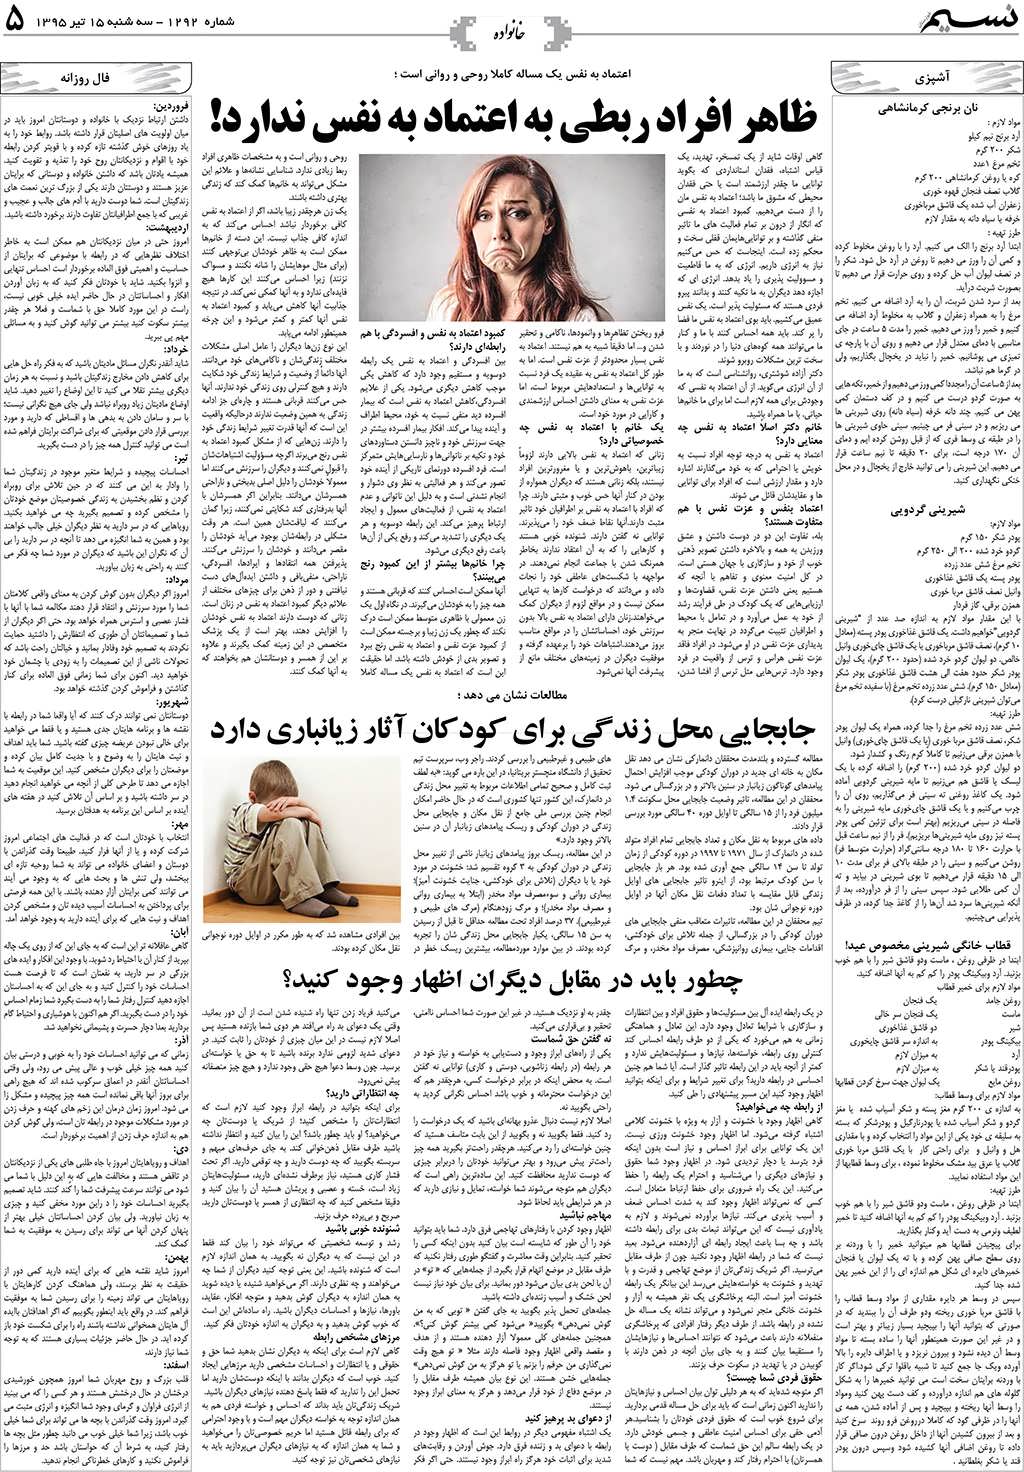 صفحه خانواده روزنامه نسیم شماره 1292